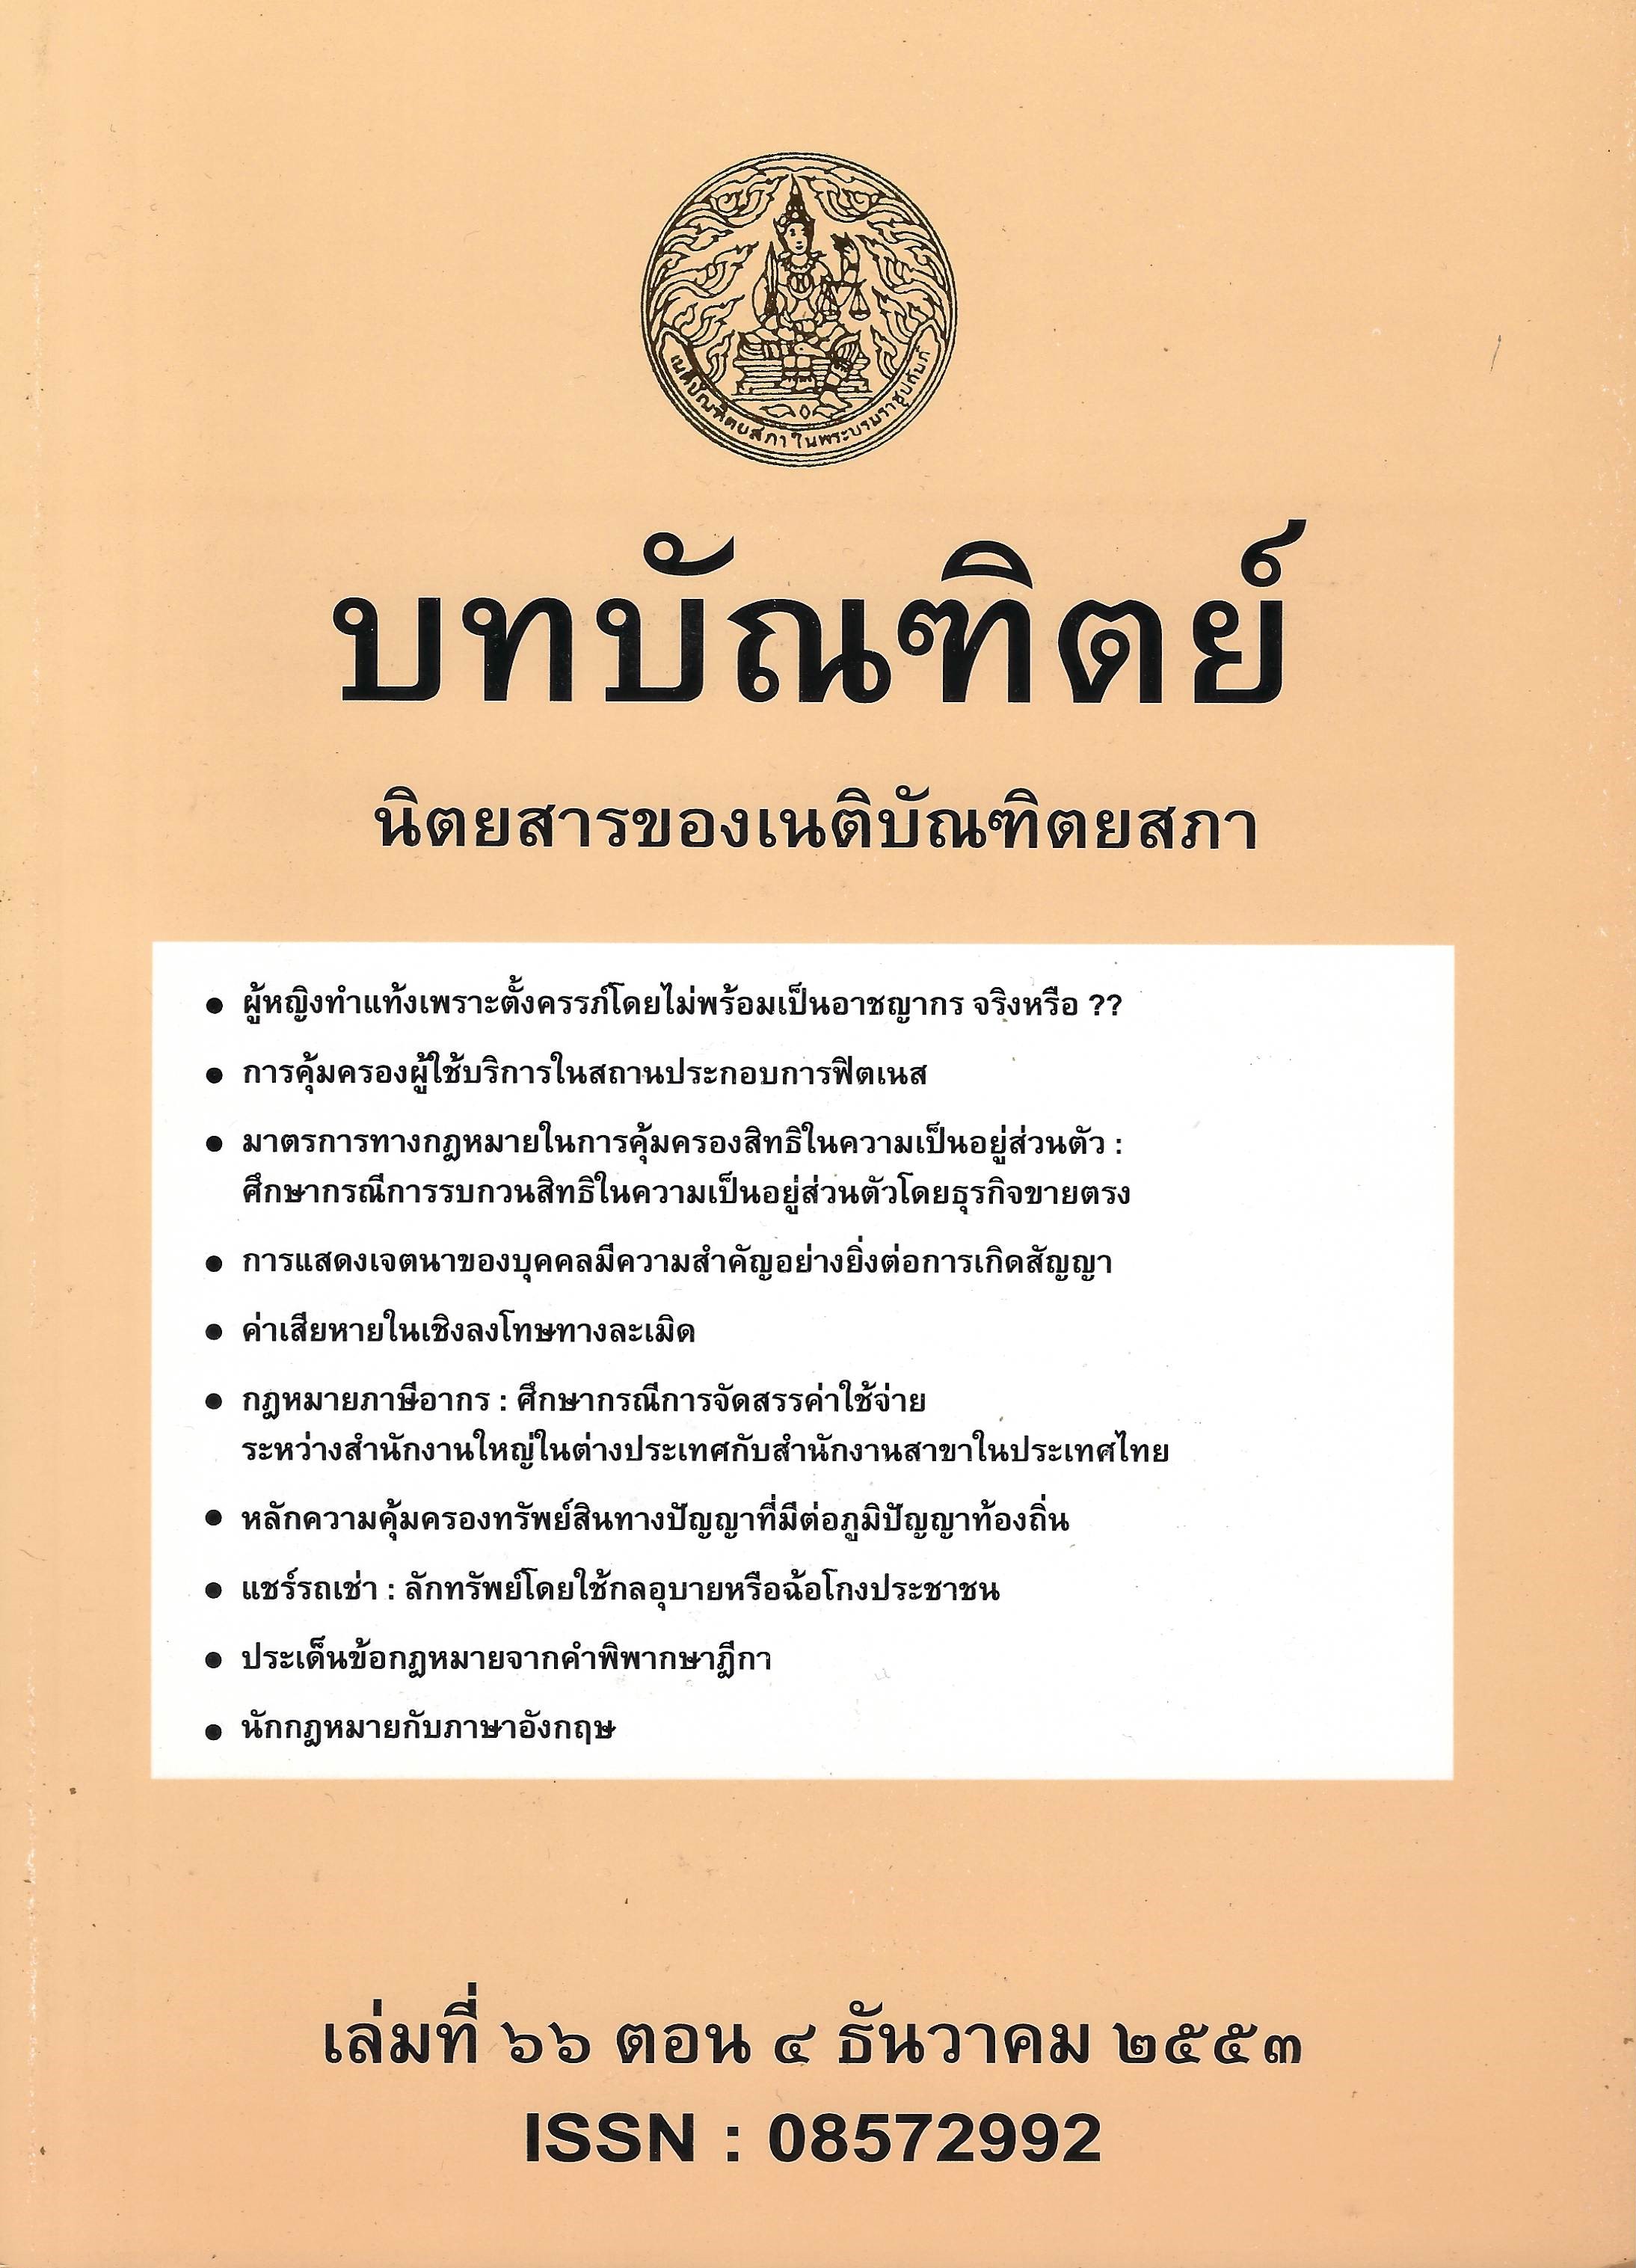 เนติบัณฑิตยสภา ในพระบรมราชูปถัมภ์ | The Thai Bar Under The Royal Patronage